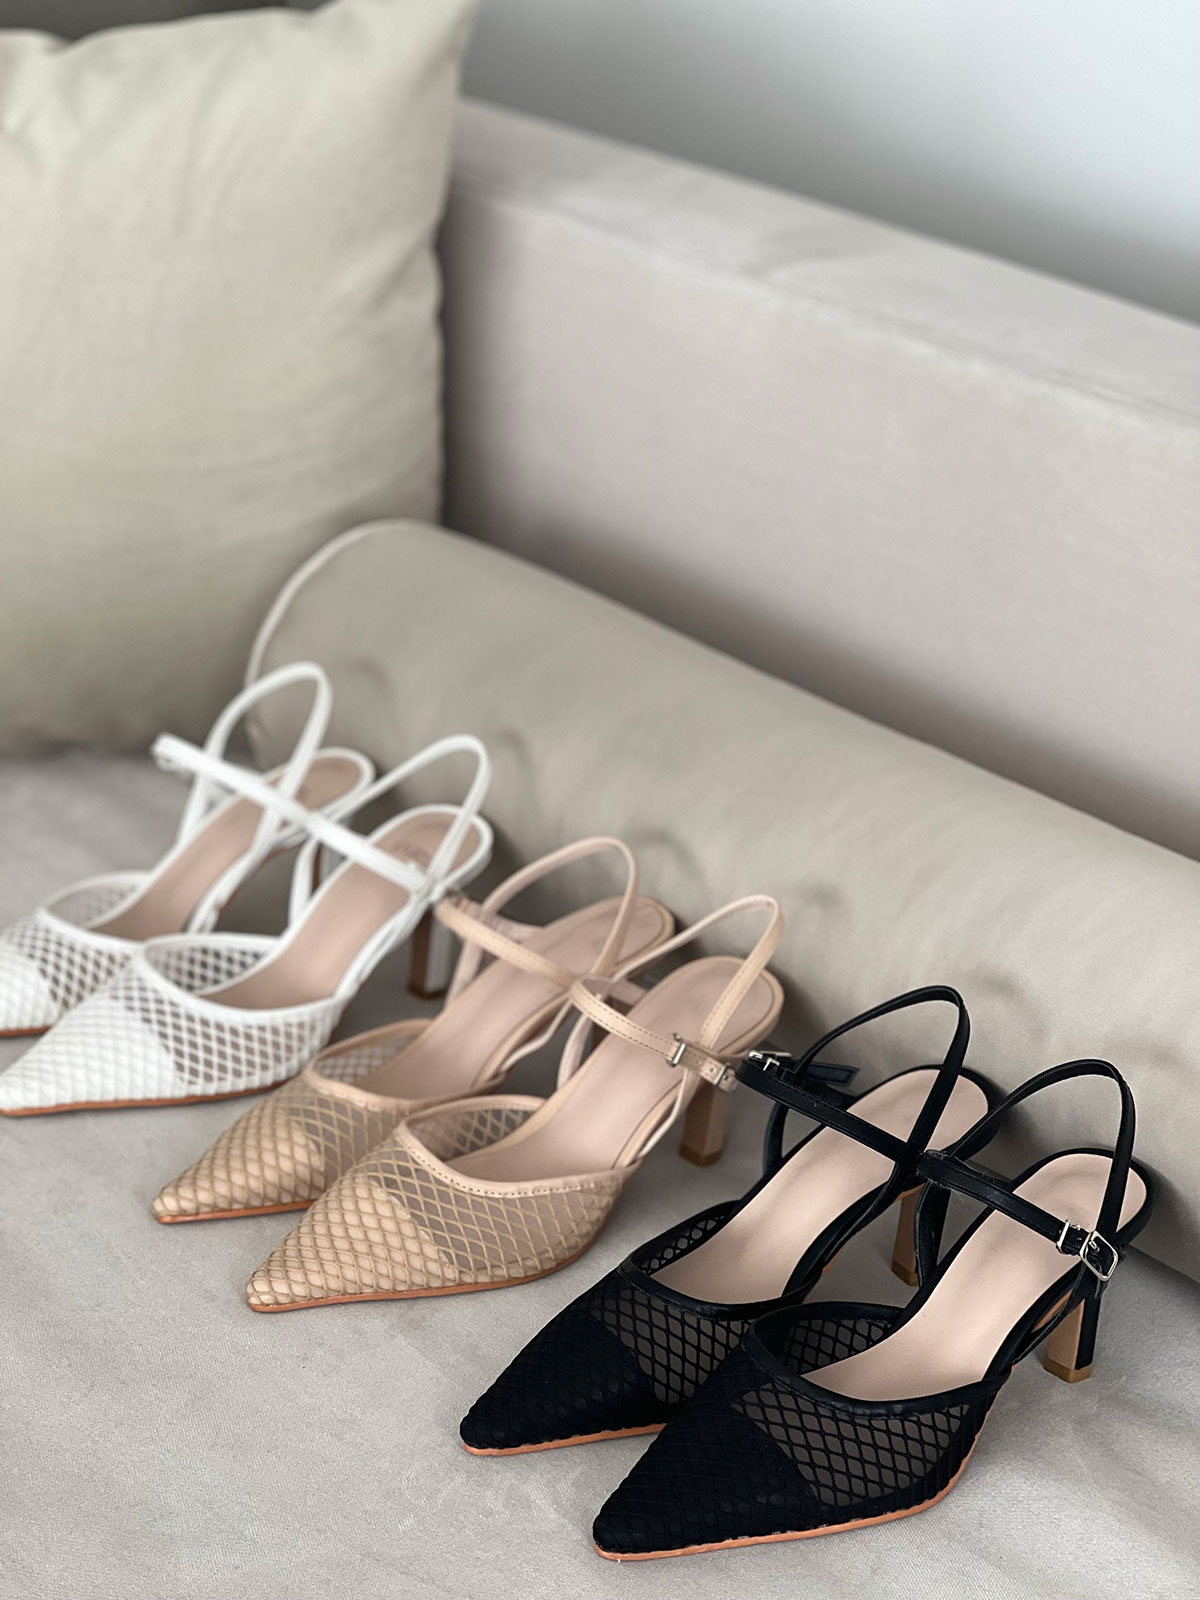 クン princess lace heel カラー:ブラック、ホワイト、ピンクベージュ